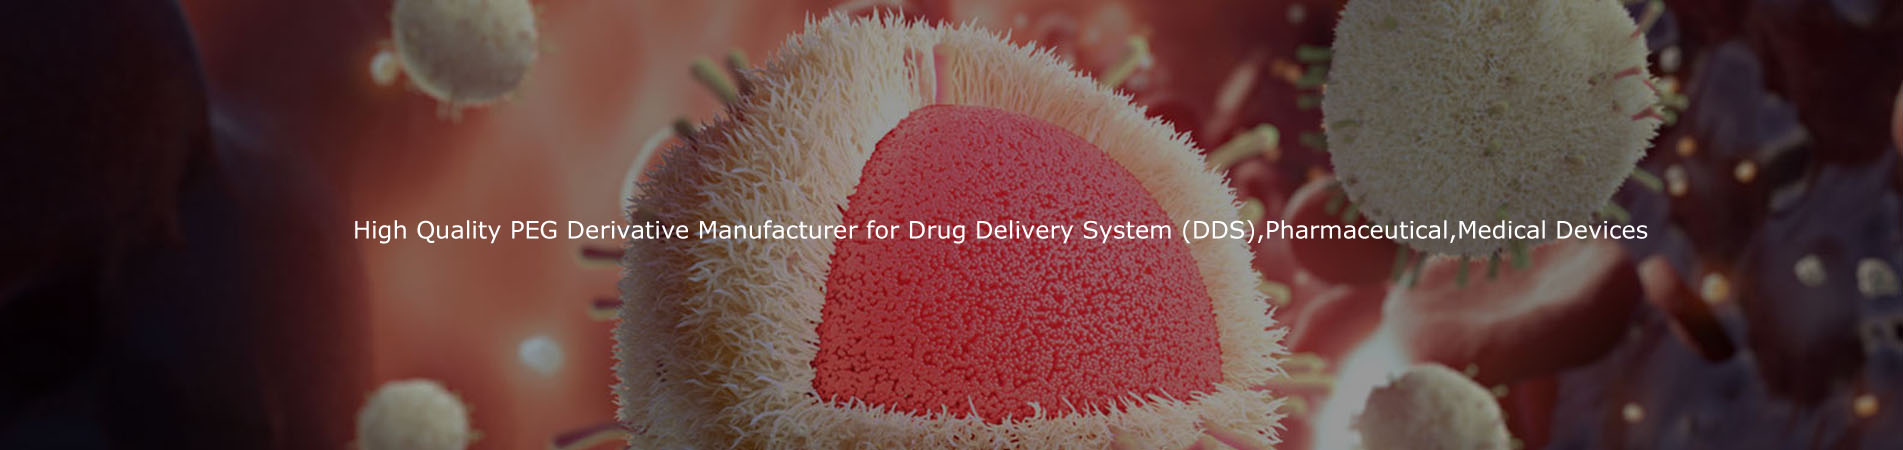 Fabricant de produits dérivés de cheville de haute qualité pour système de distribution de médicaments (DDS), pharmaceutique, Dispositifs médicaux